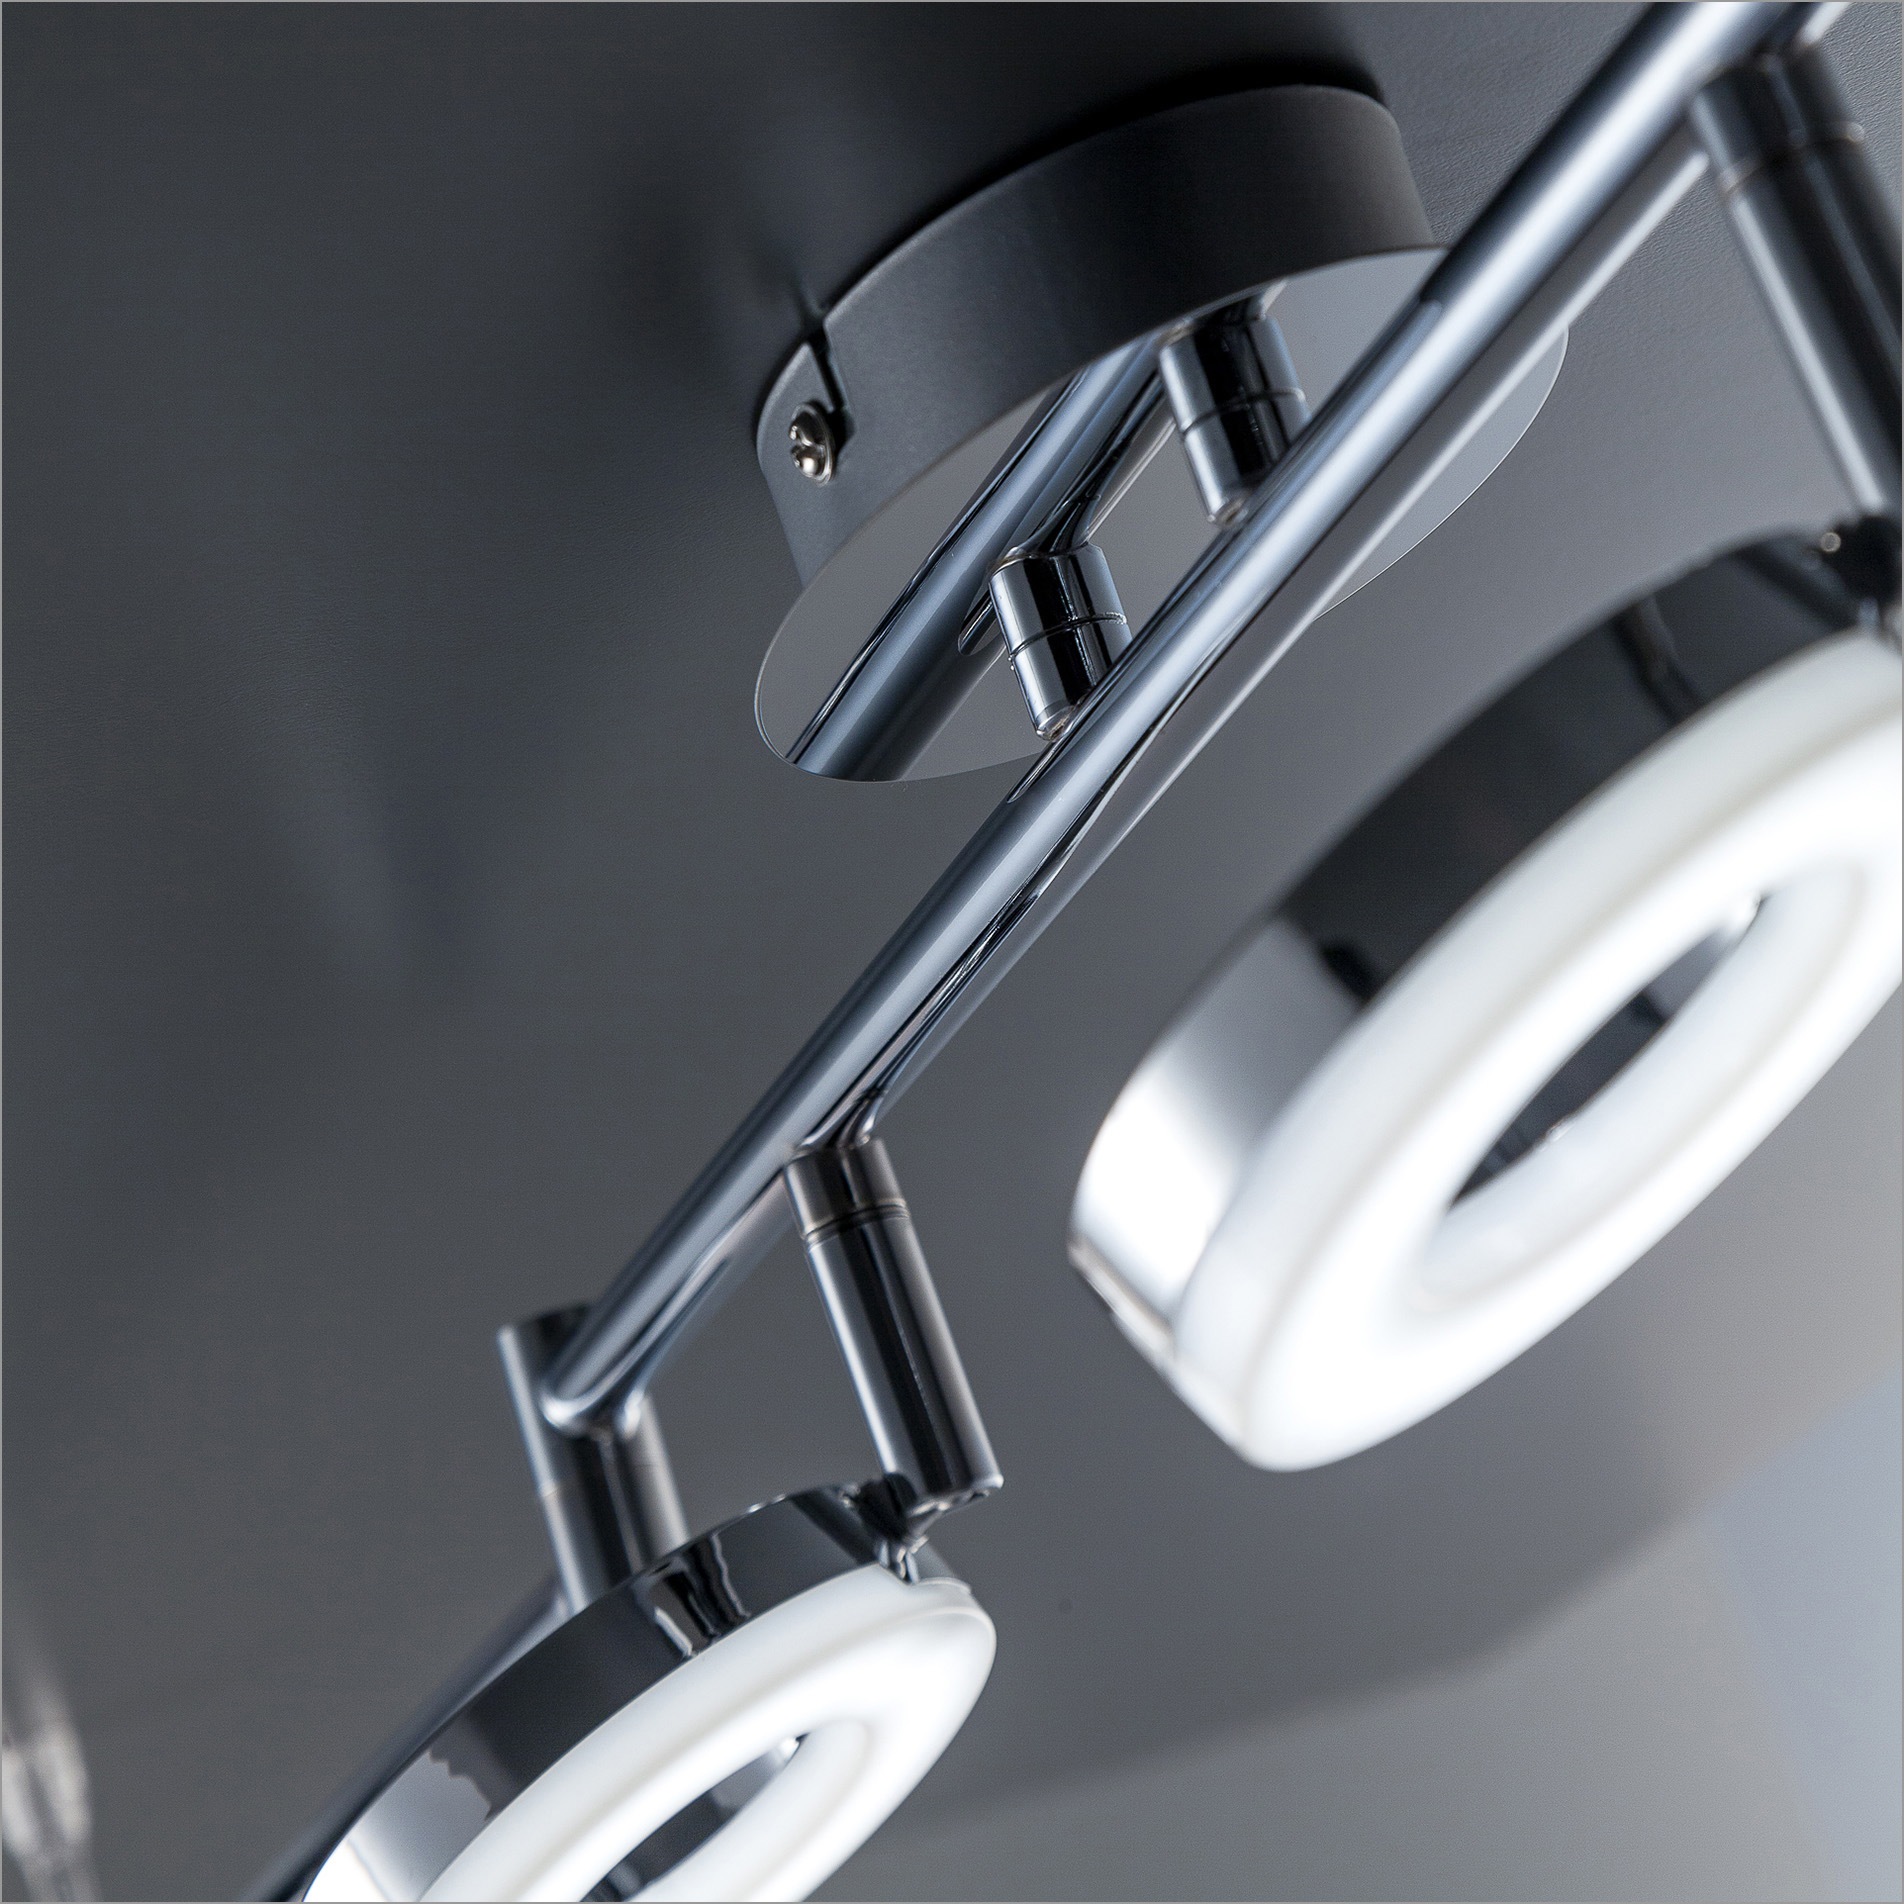 B.K.Licht LED Deckenleuchte, 6 flammig-flammig, LED Deckenlampe,  Wohnzimmer, Decken-Spot, Strahler, inkl. 4,5W 450lm | BAUR